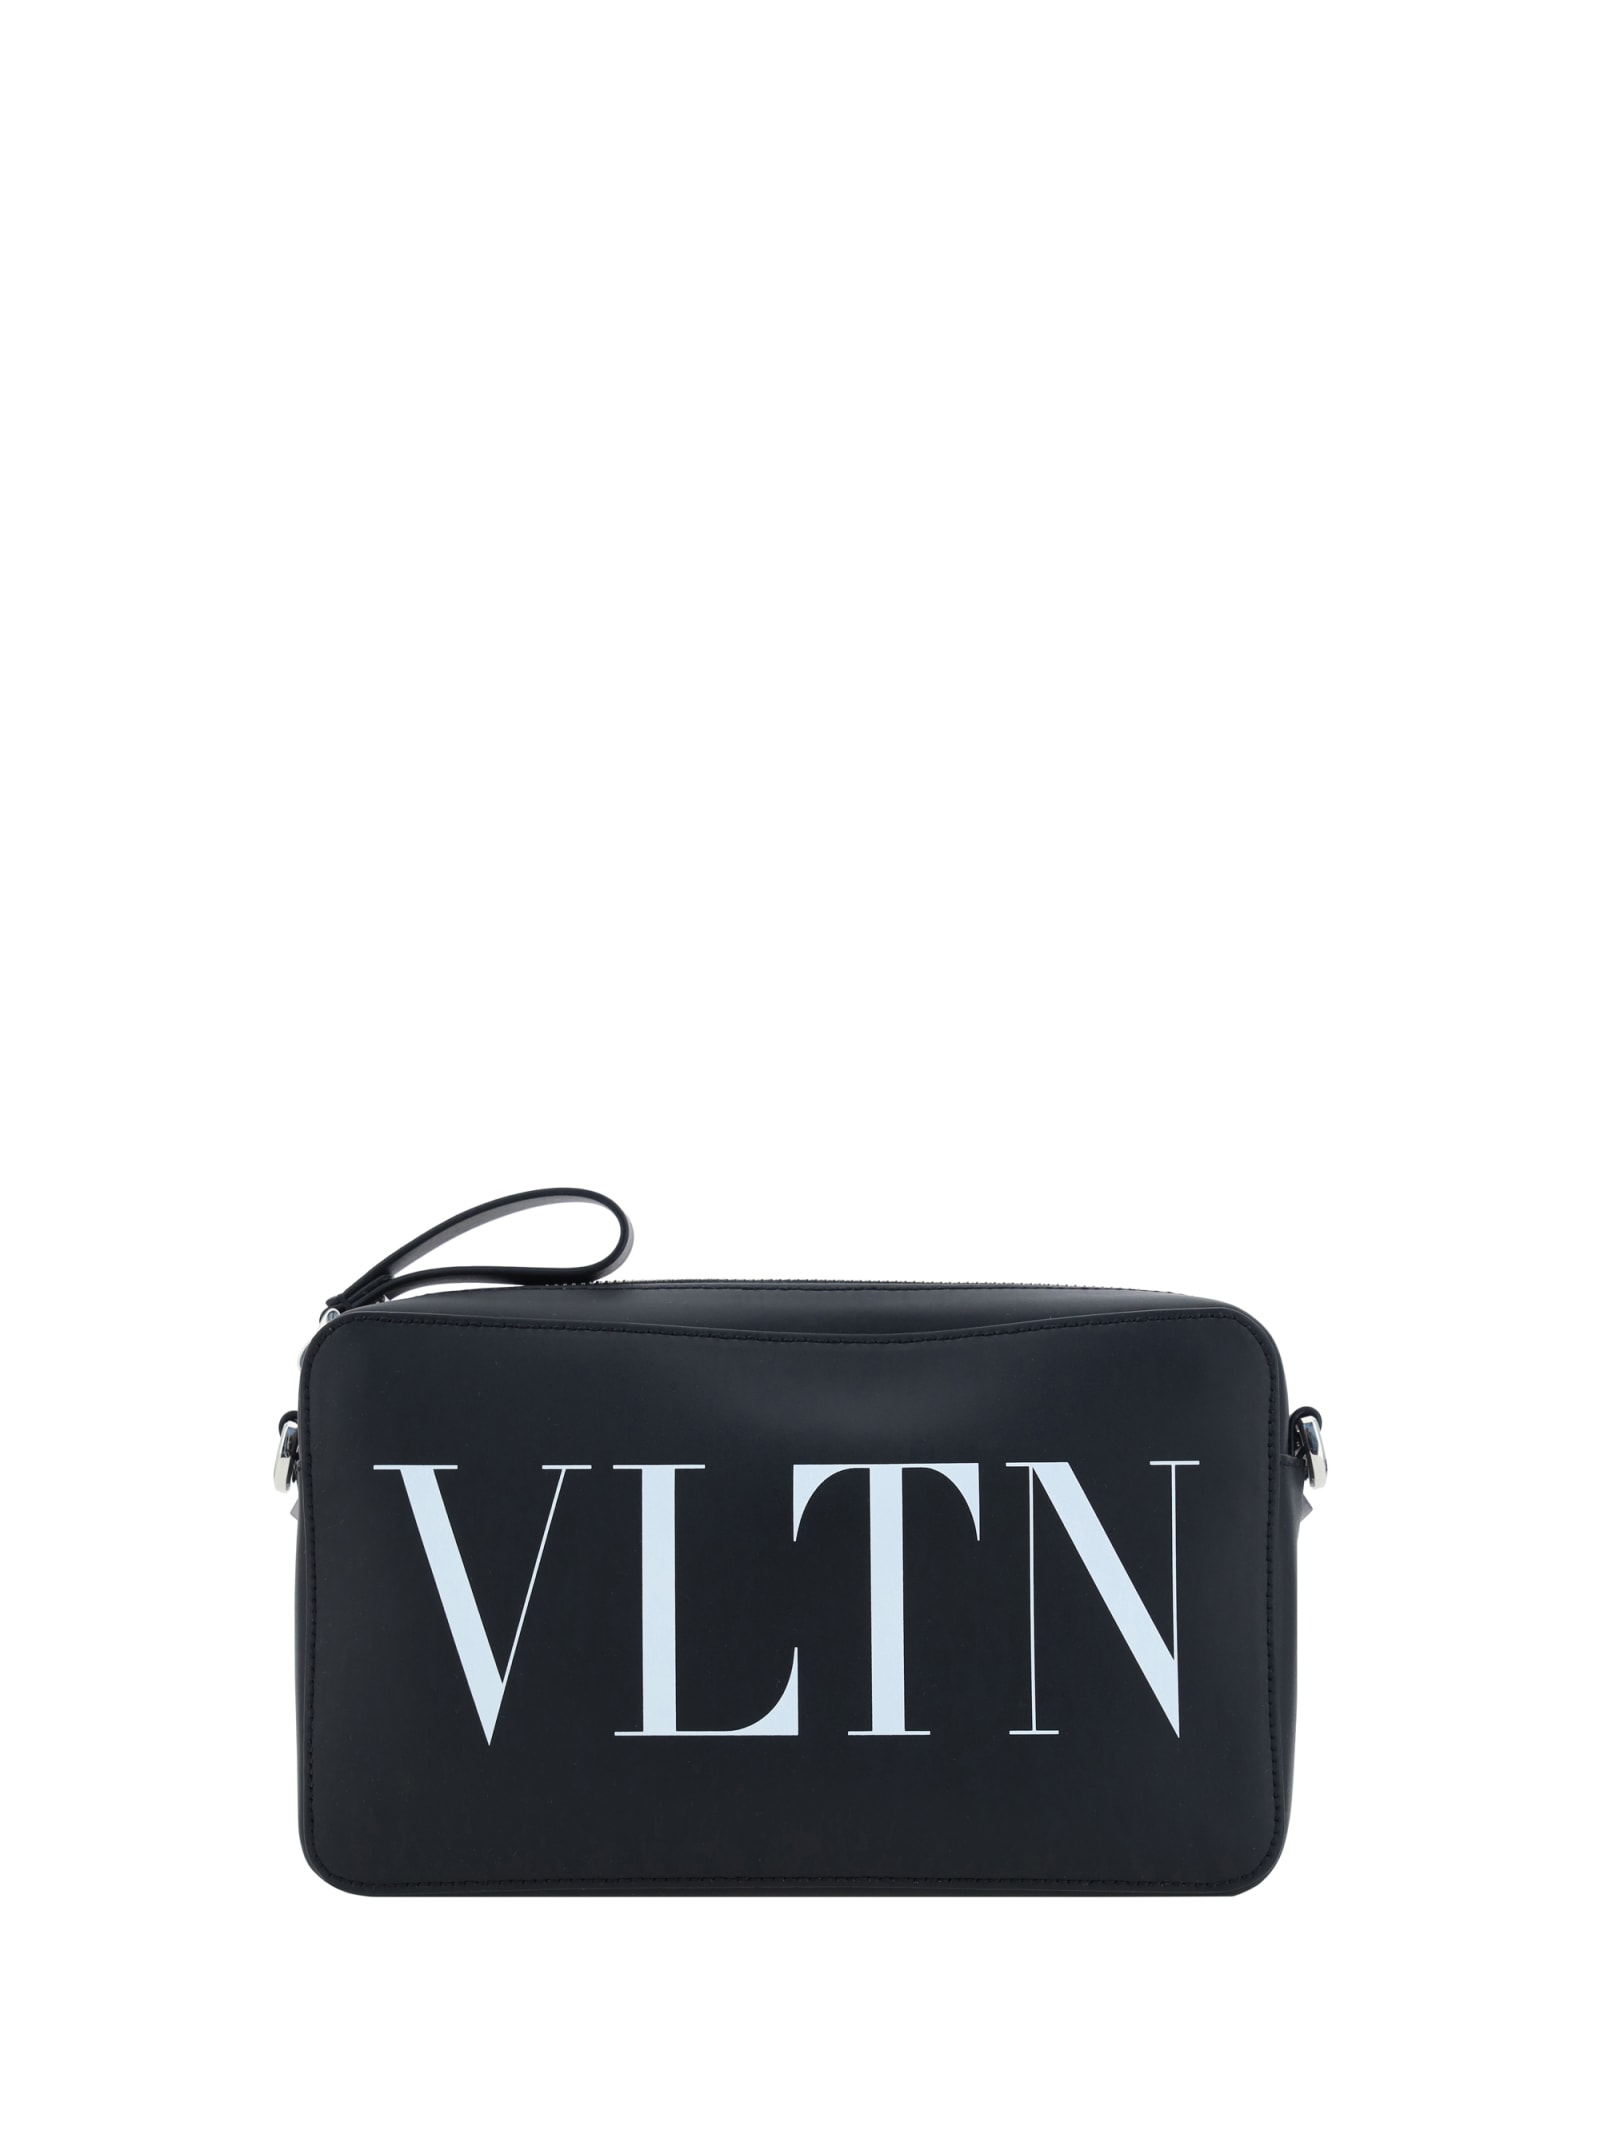 Valentino Garavani Vltn Shoulder Bag In Nero/bianco